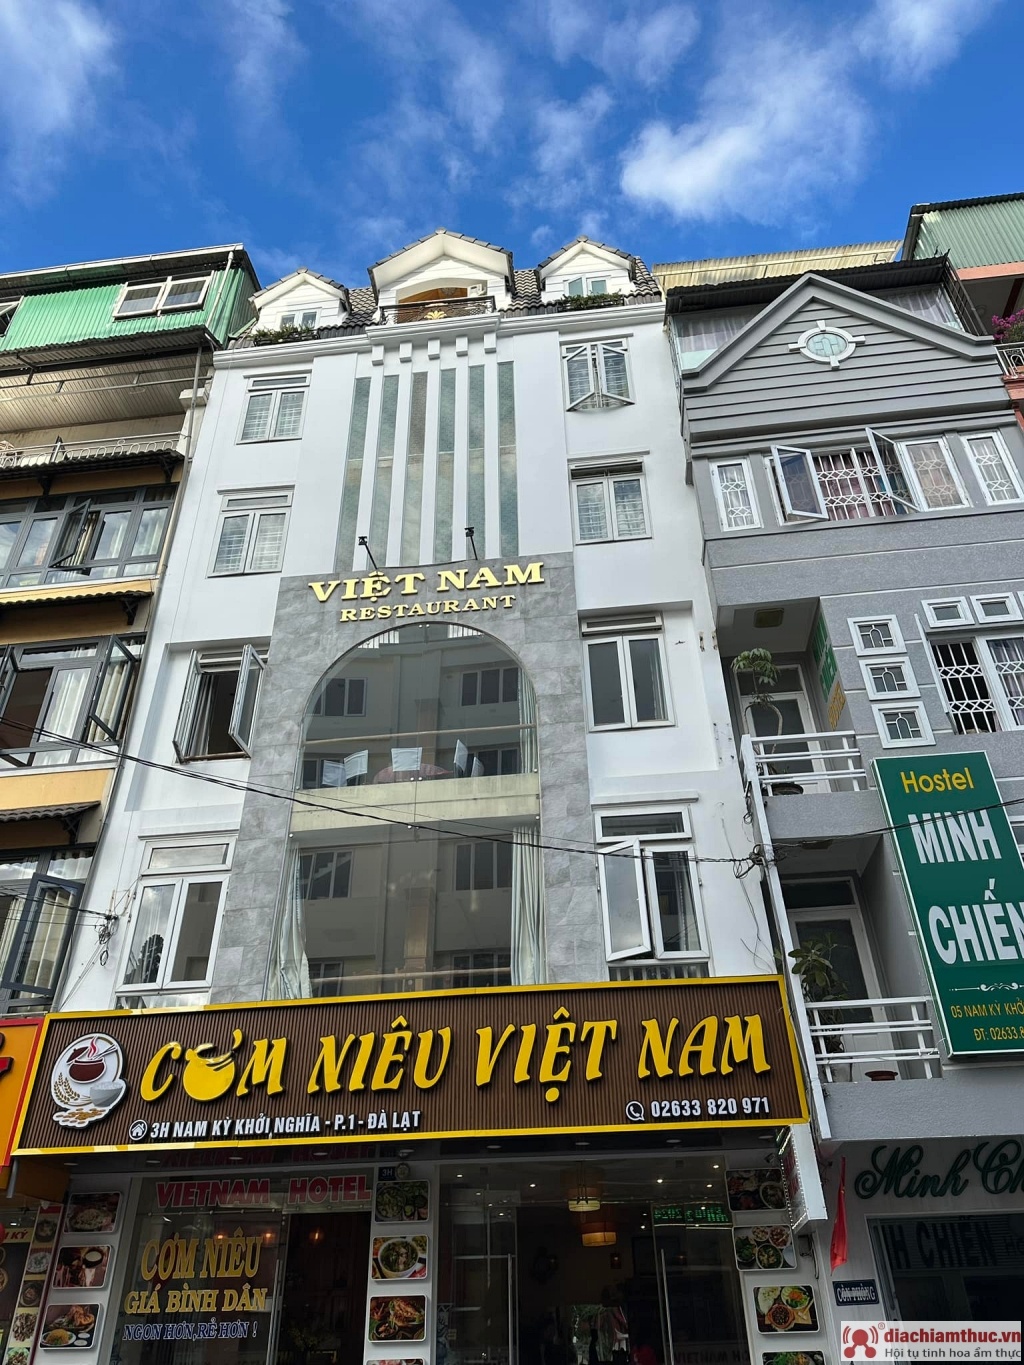 Nhà hàng cơm niêu Việt Nam - Đà Lạt